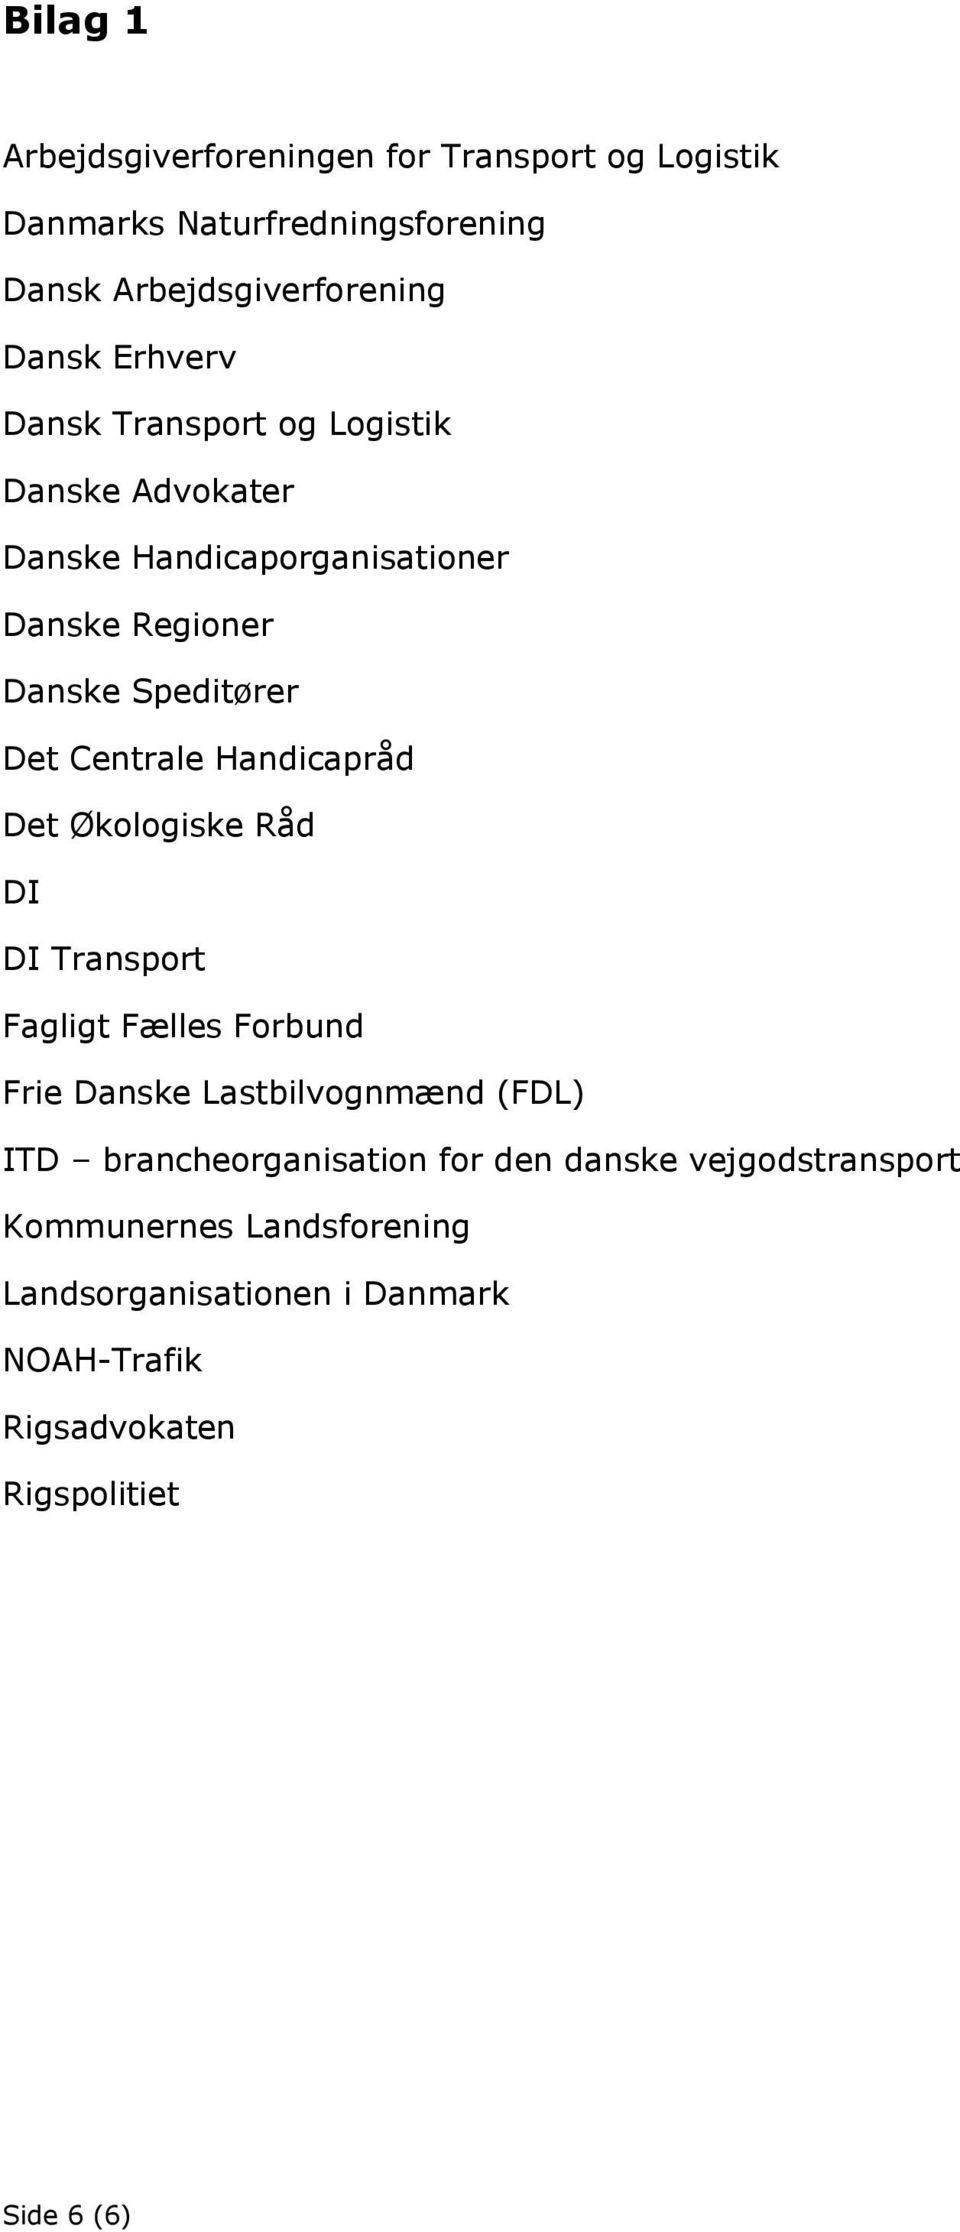 Handicapråd Det Økologiske Råd DI DI Transport Fagligt Fælles Forbund Frie Danske Lastbilvognmænd (FDL) ITD brancheorganisation